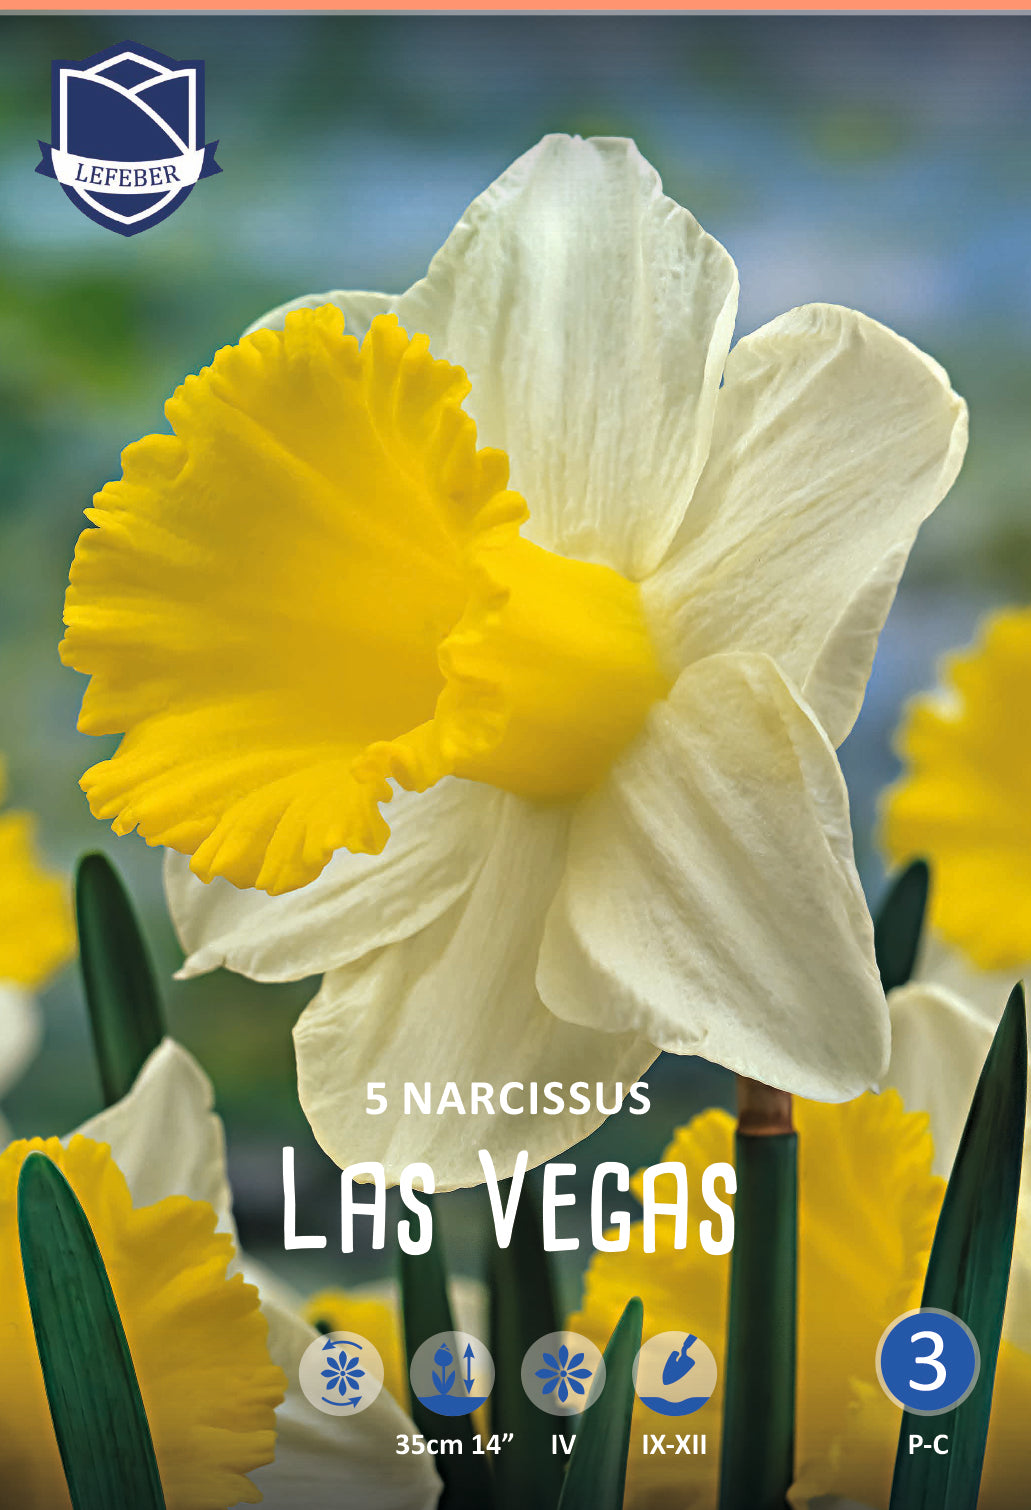 Narcissus Las Vegas